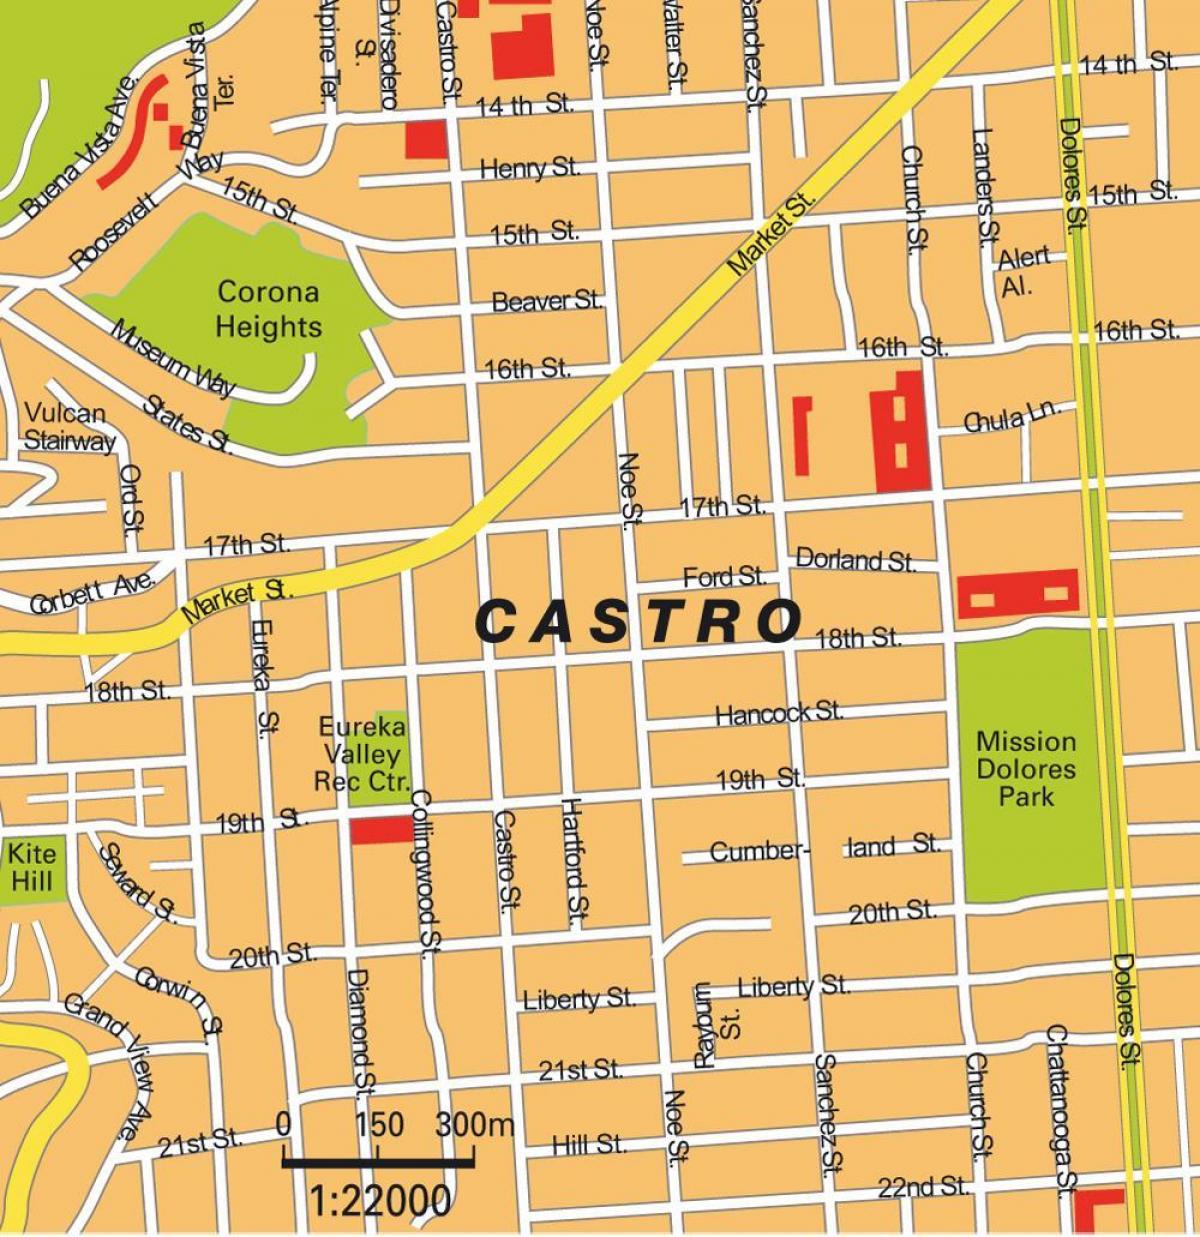 מפה של מחוז קסטרו בסן פרנסיסקו